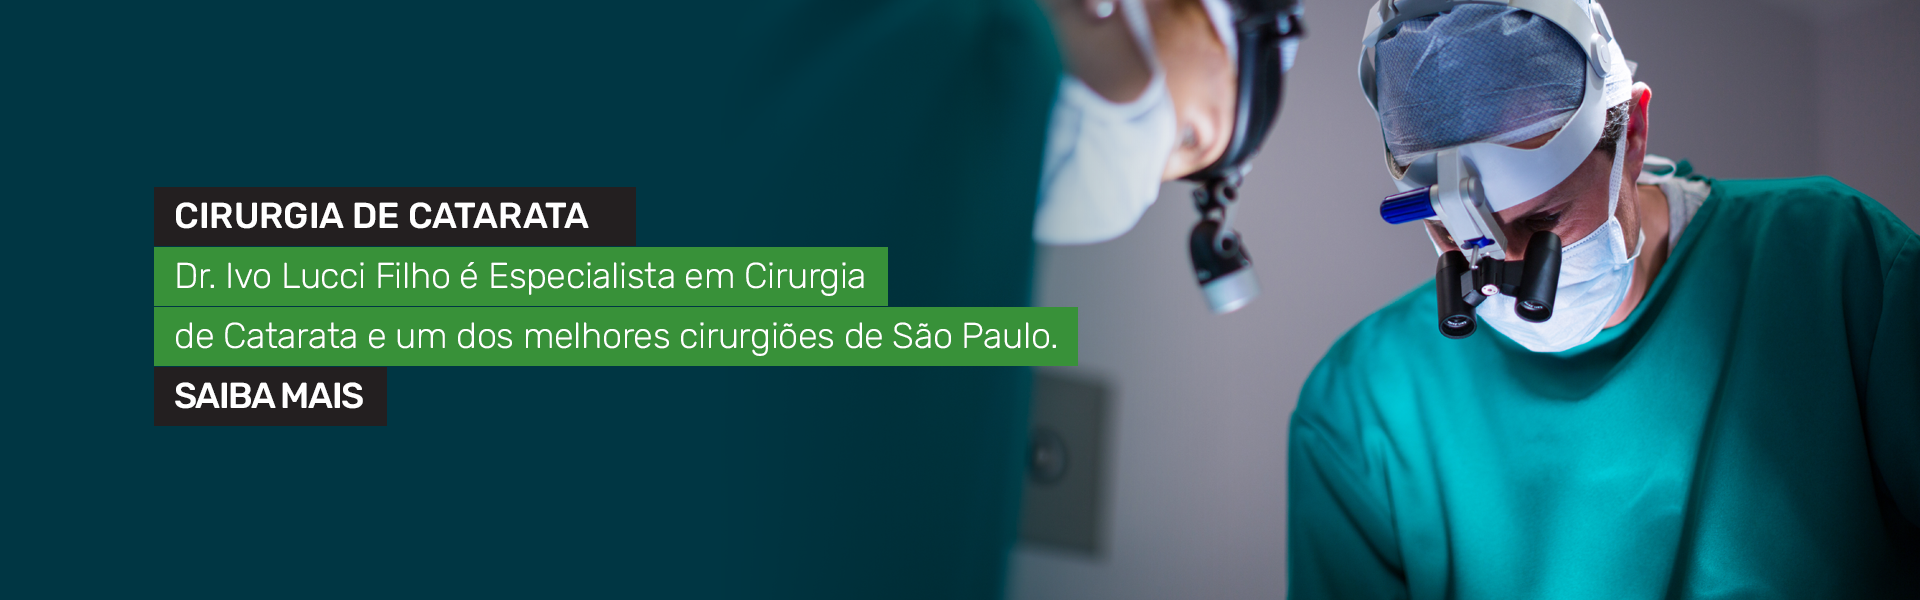 Dr. Ivo Lucci Filho  Especialista em Cirurgia de Catarata em So Paulo